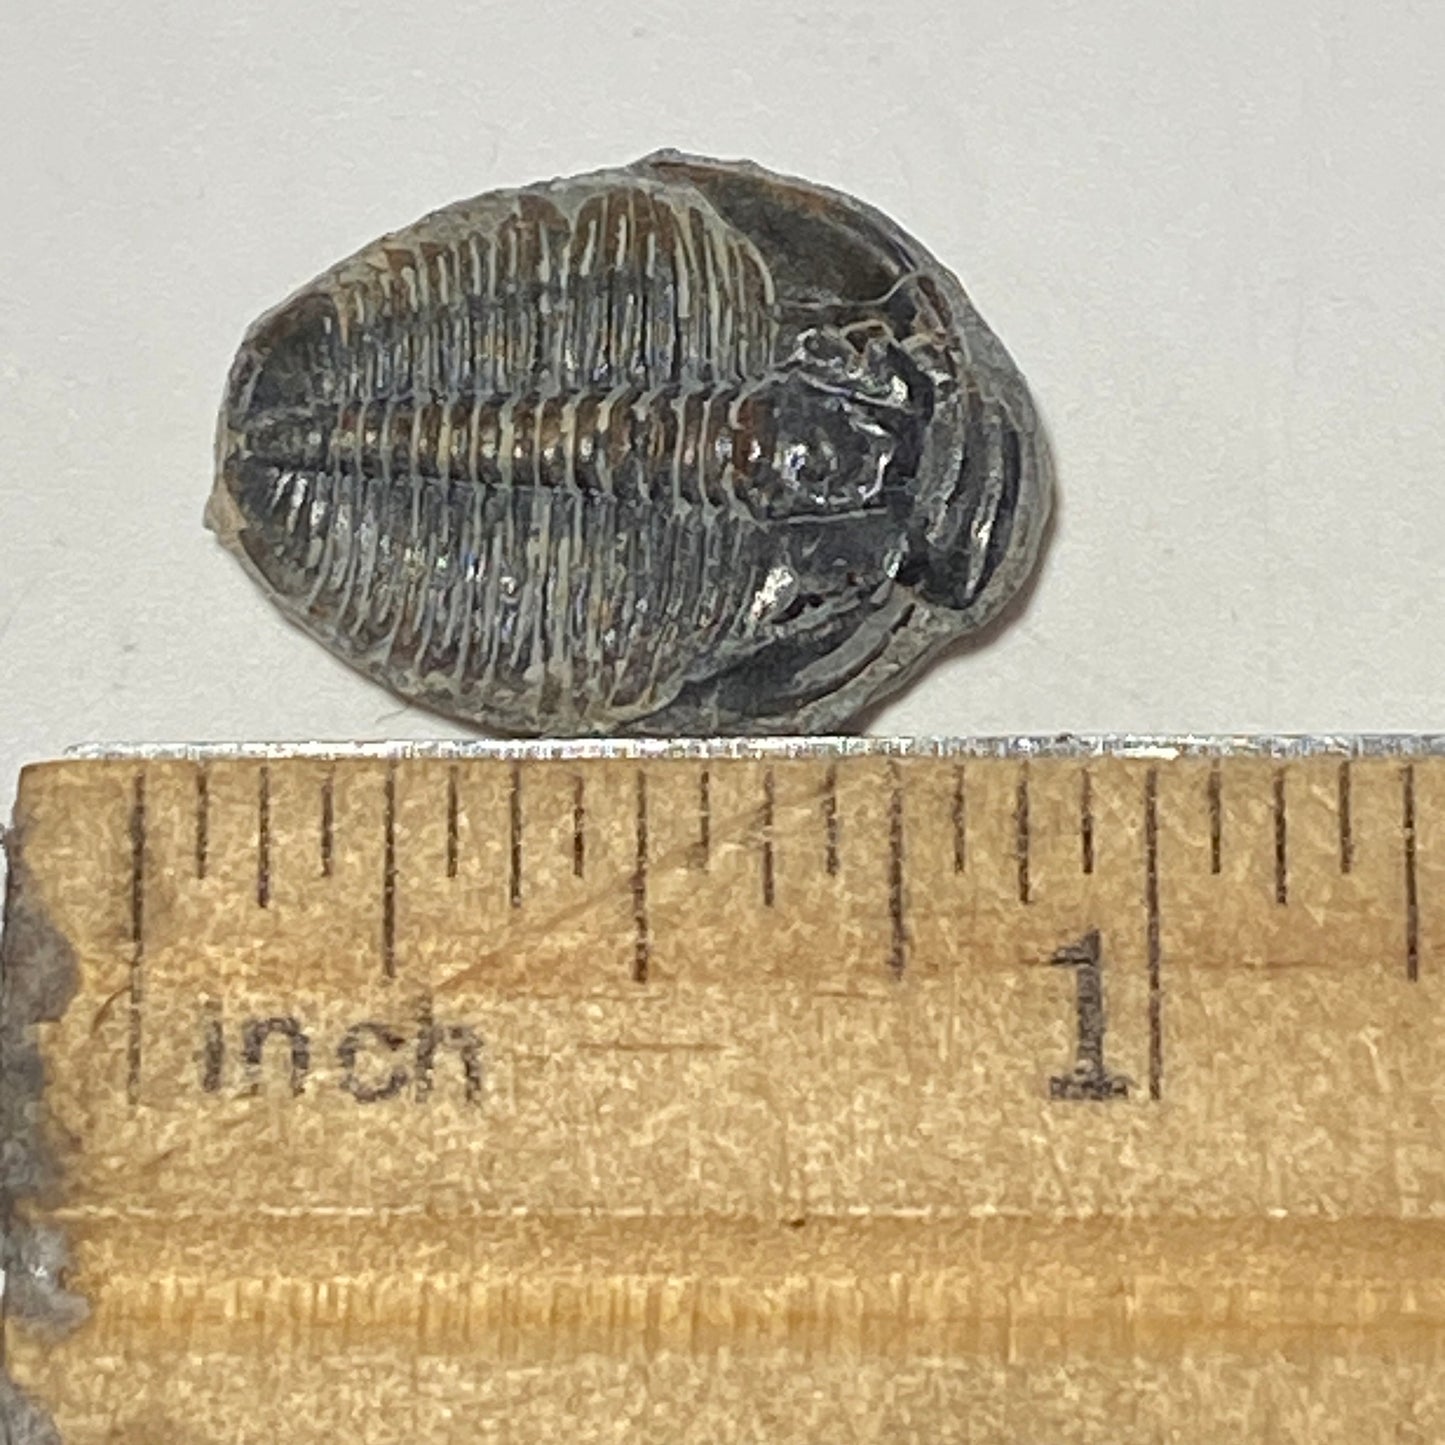 Trilobite fossil, Elrathia King from Utah | 3/4-7/8 inch long, Utah fossil, fossil collectible, trilobite specimen, fossil lover gift